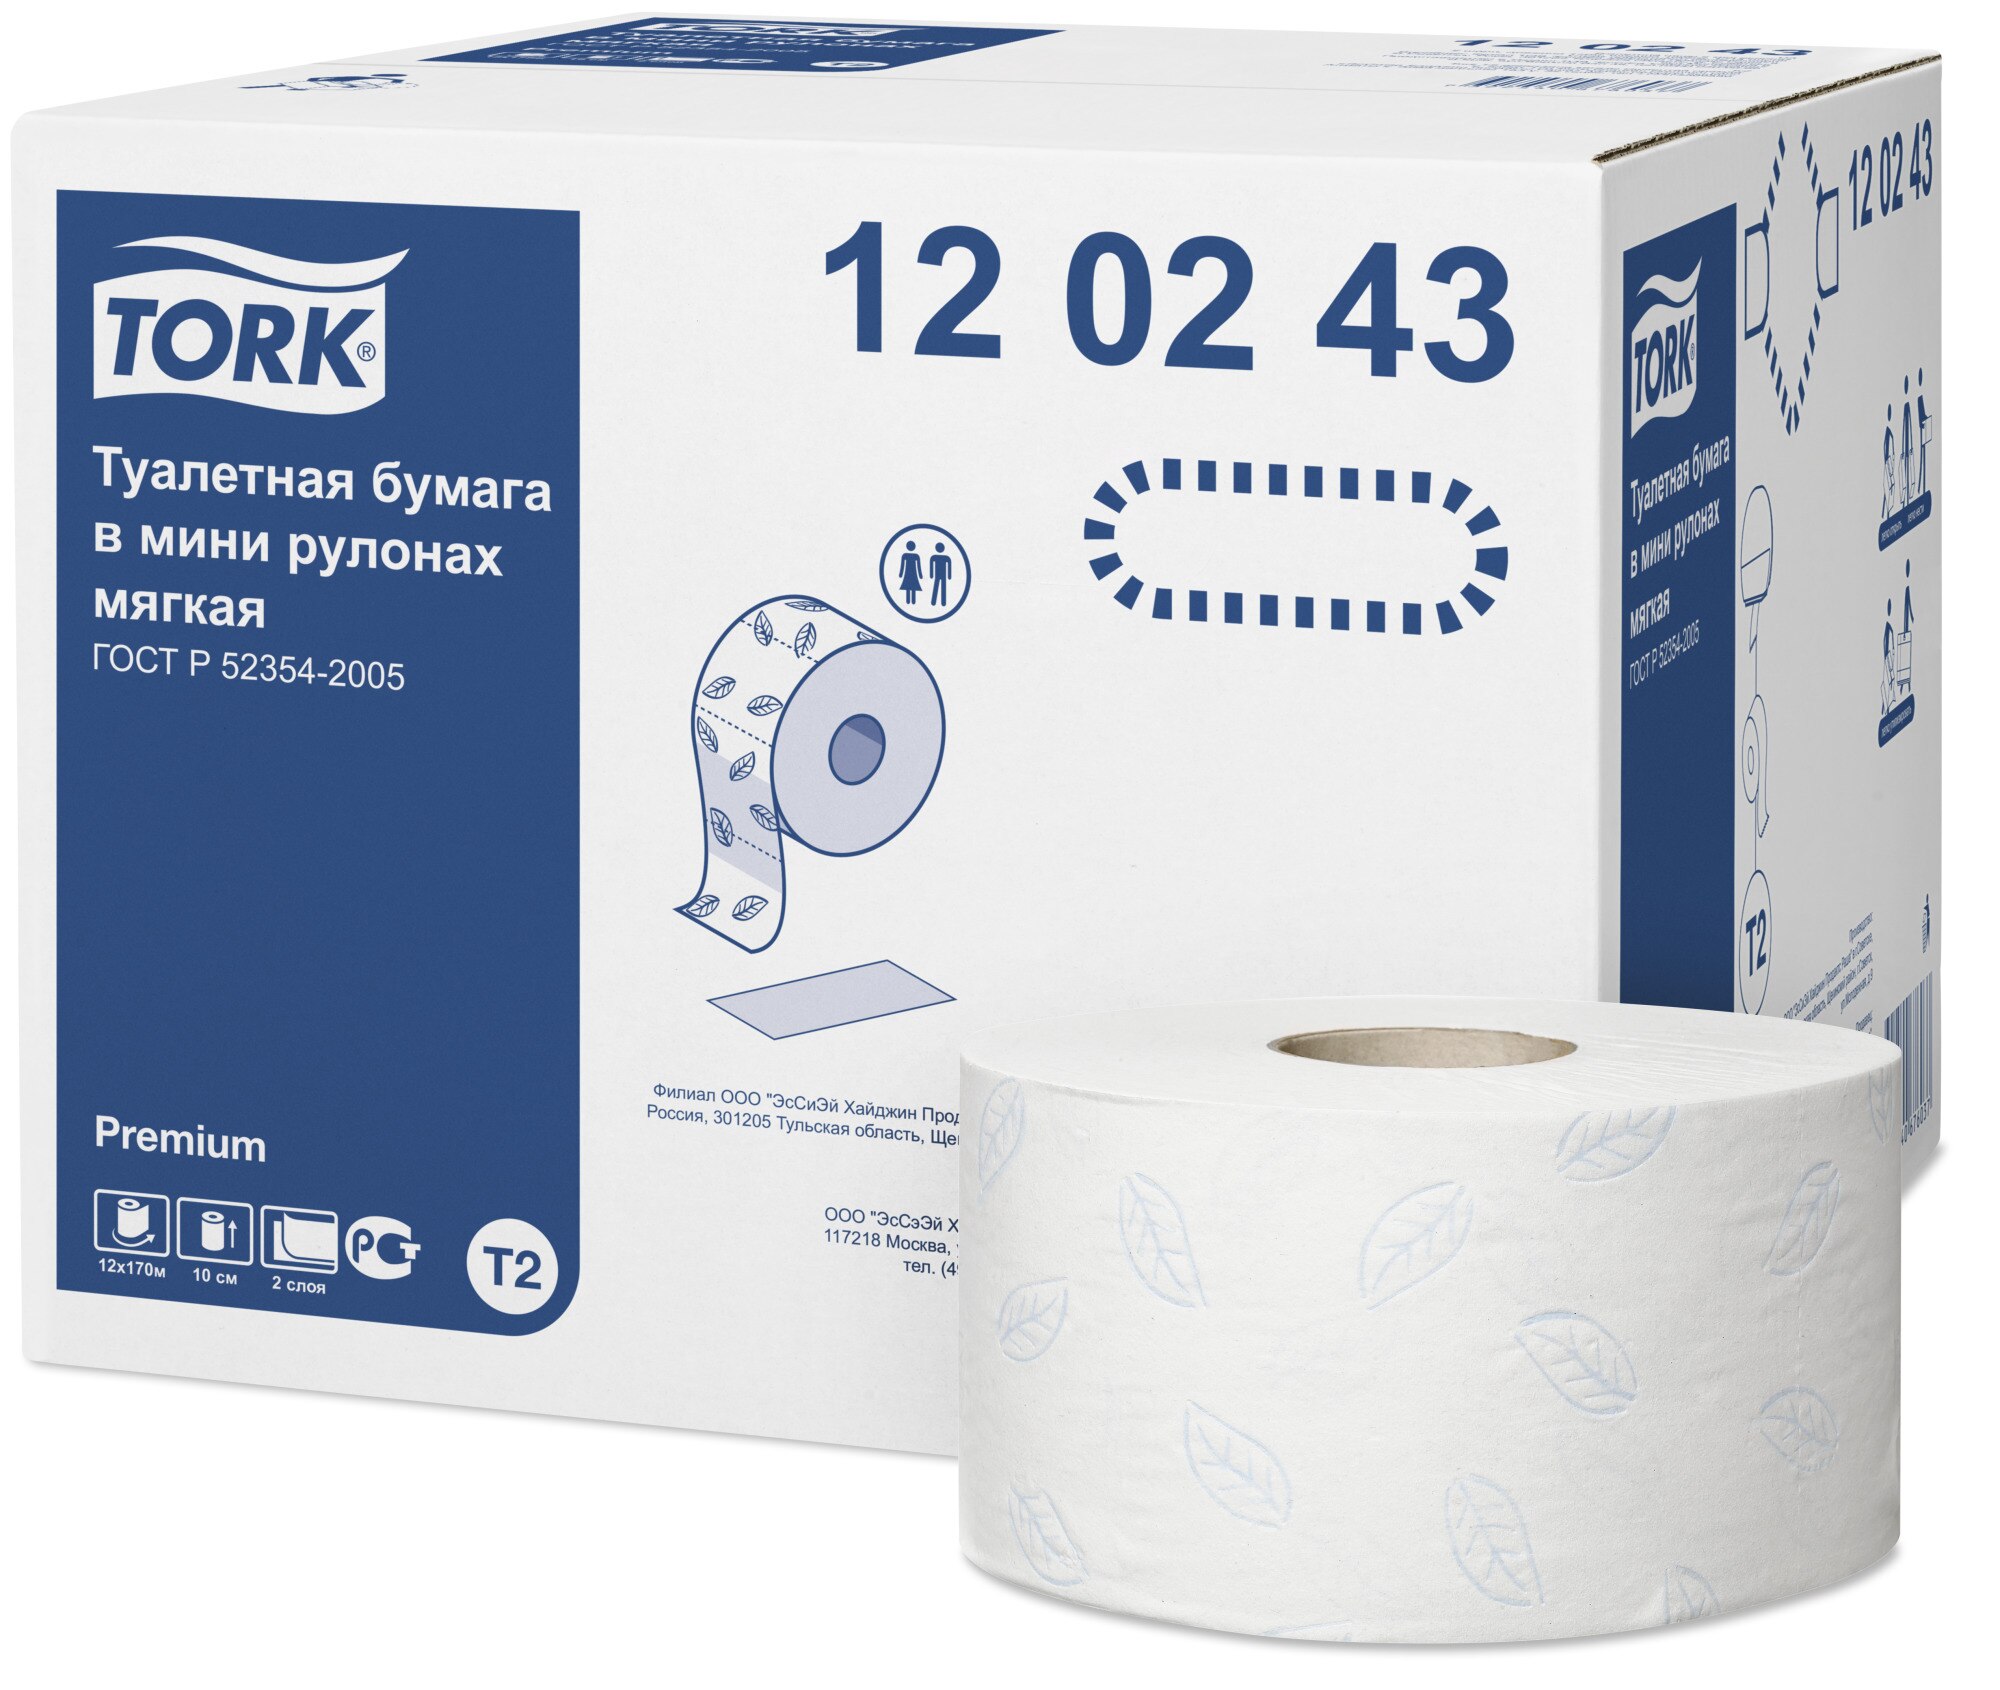 Tork Premium туалетная бумага в мини рулонах, Т2, 2cл, 170м 